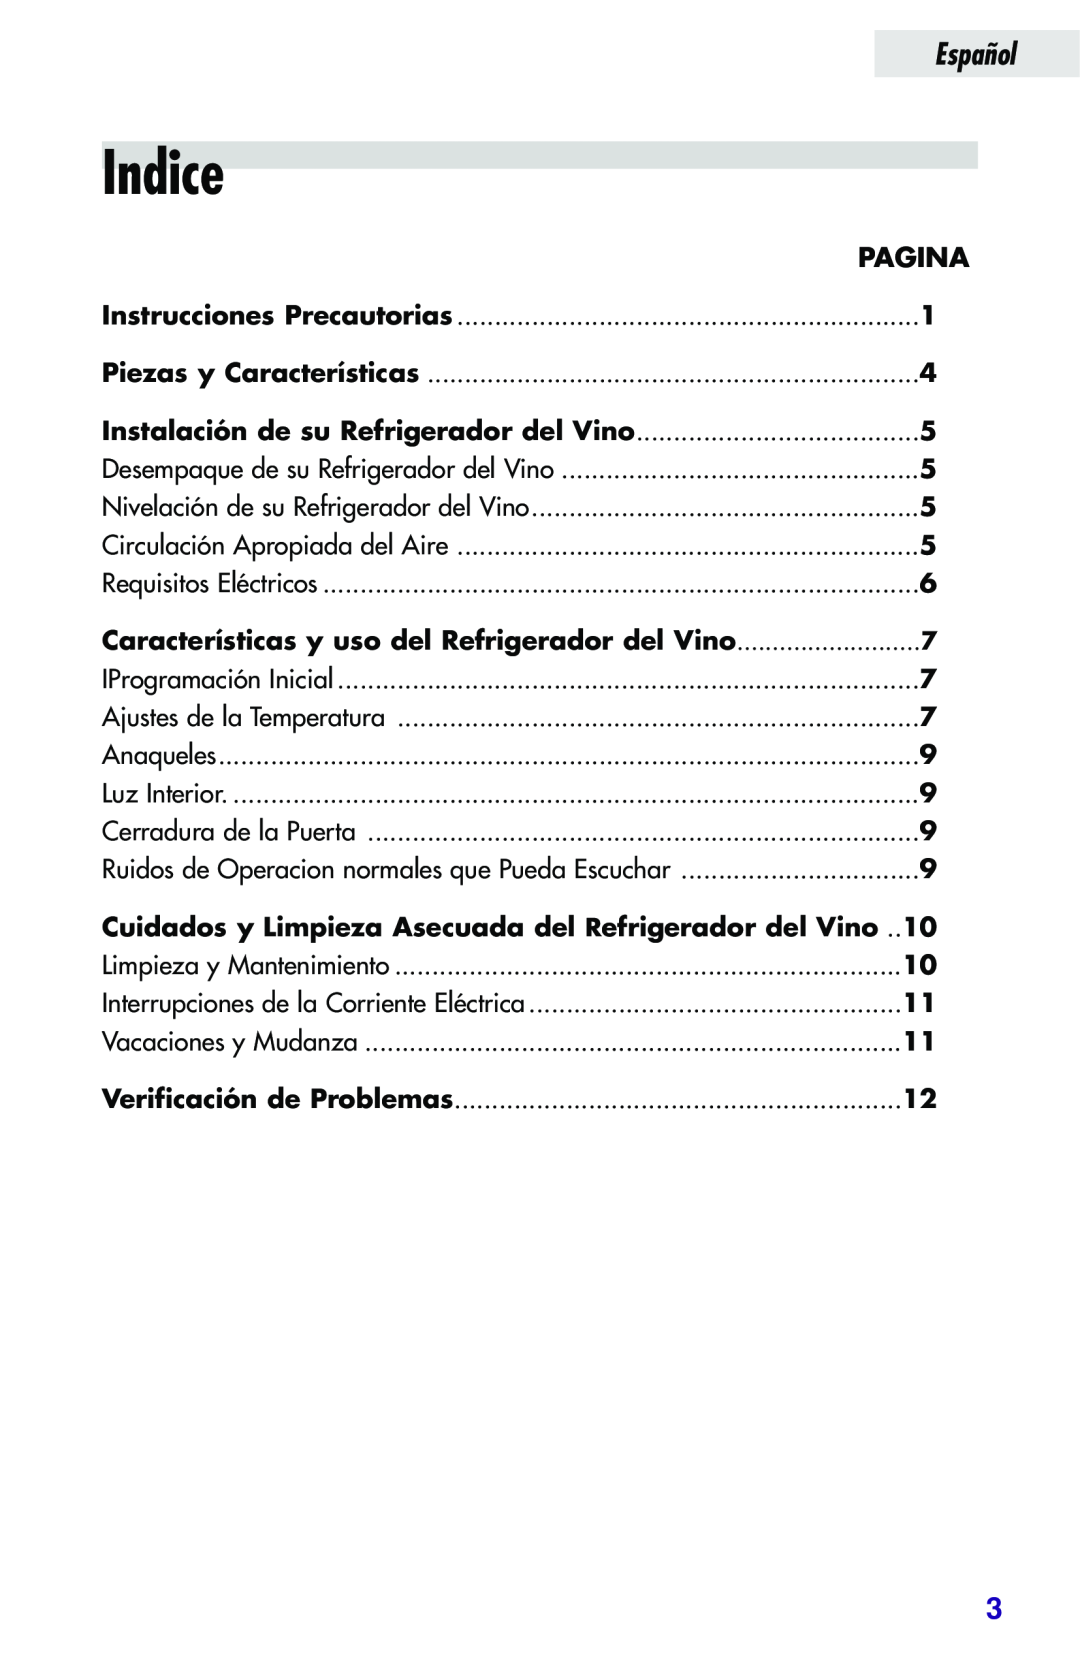 Haier JC-82GB manual Indice, Pagina, Características y uso del Refrigerador del Vino, Español, Instrucciones Precautorias 